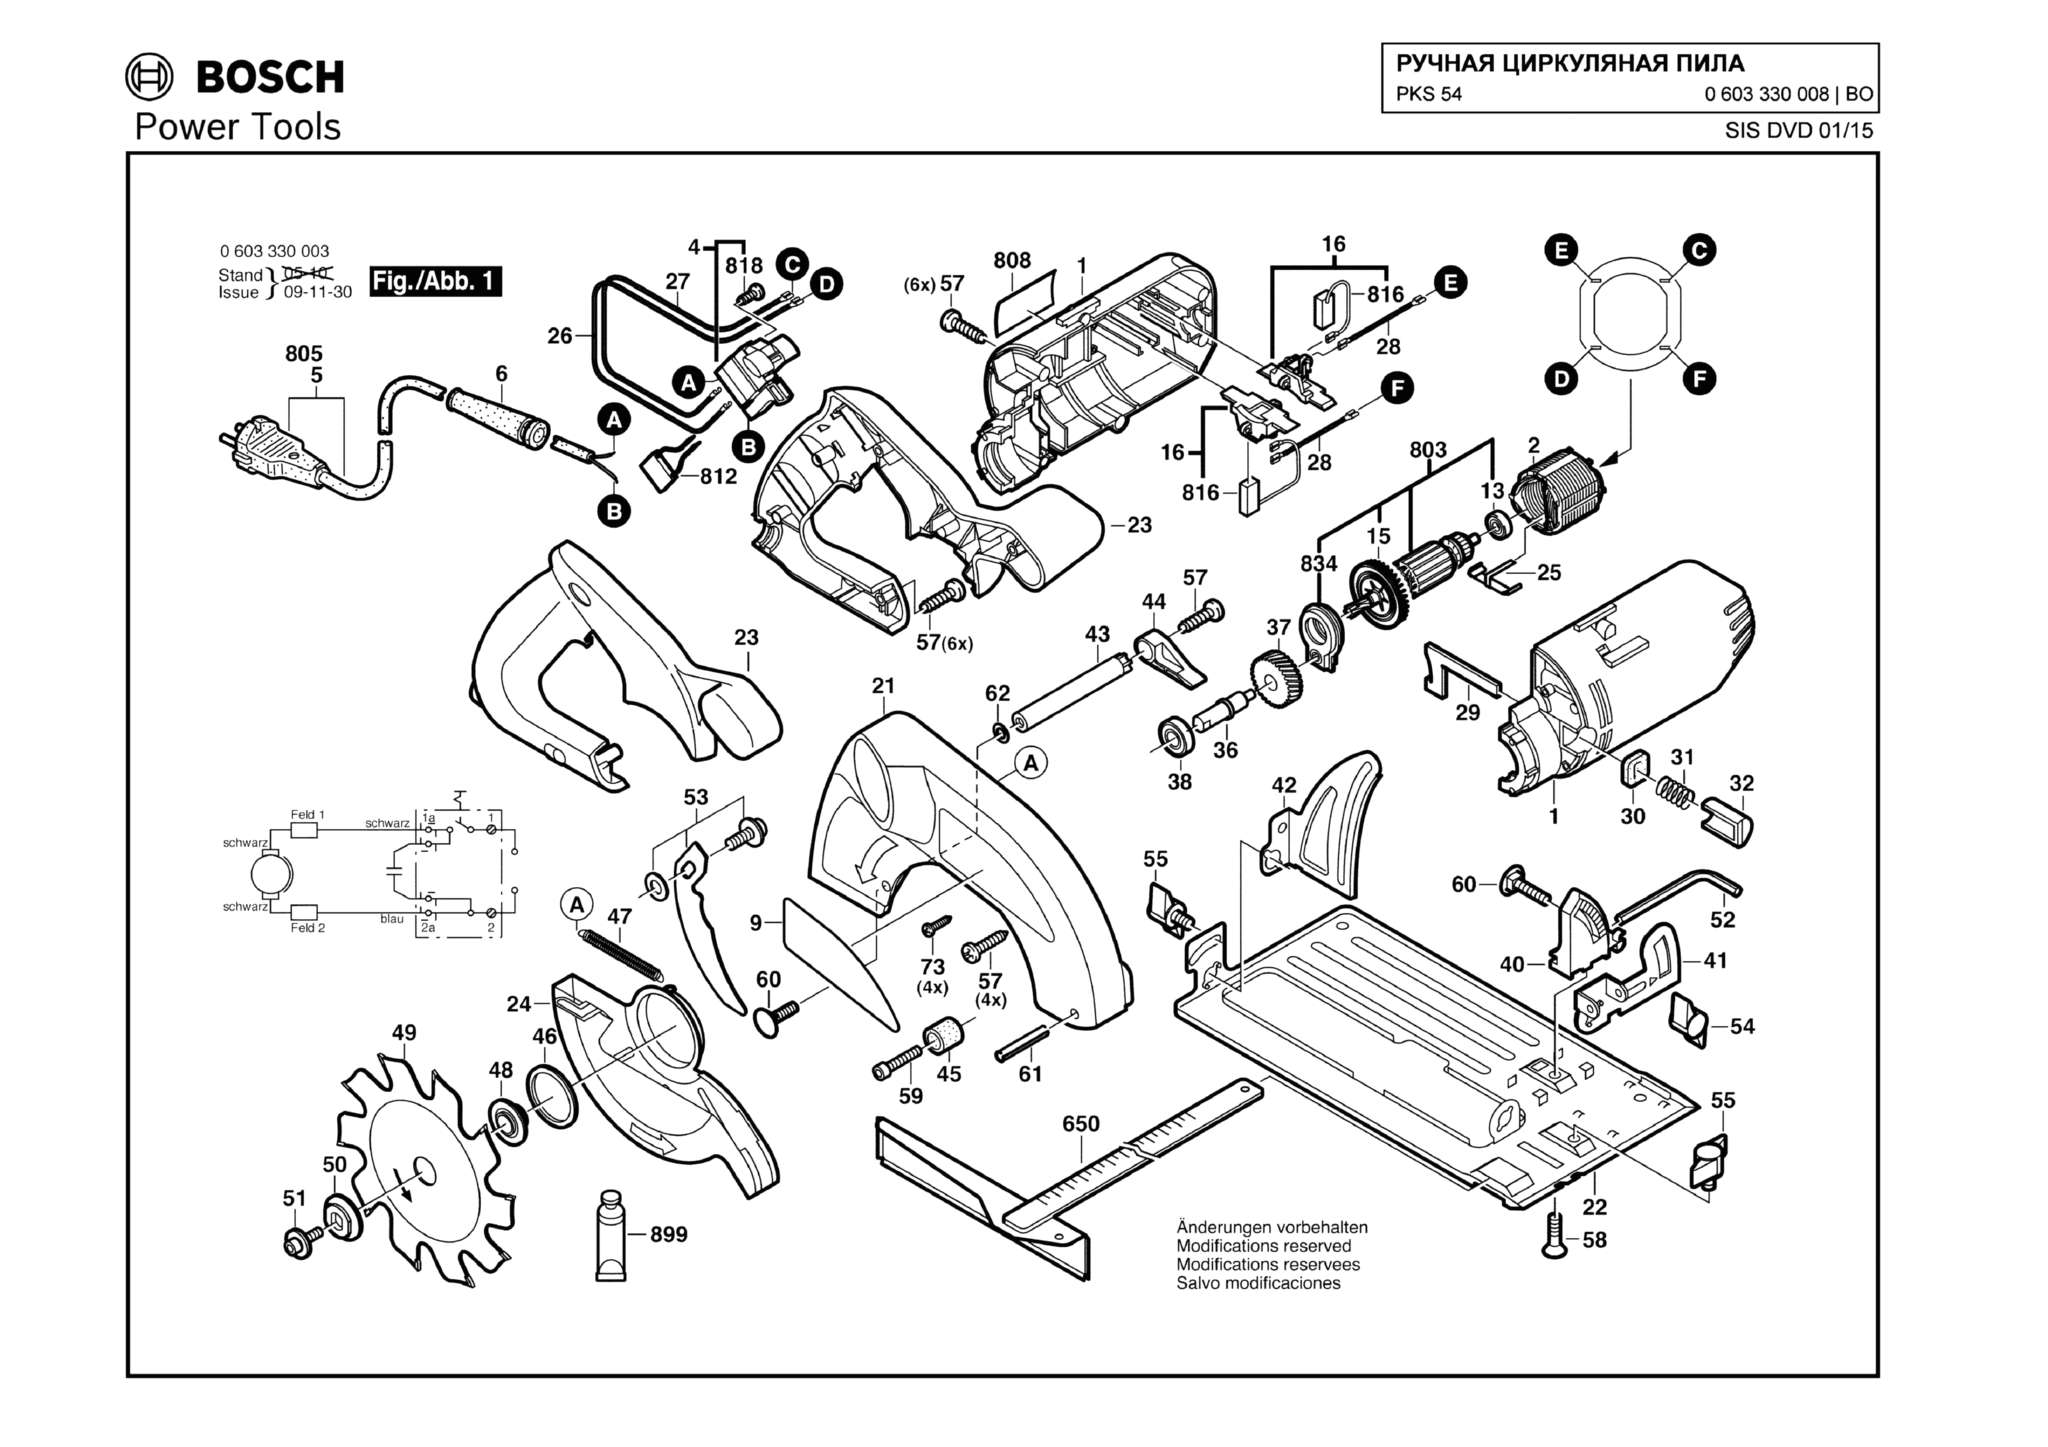 Запчасти, схема и деталировка Bosch PKS 54 (ТИП 0603330008)